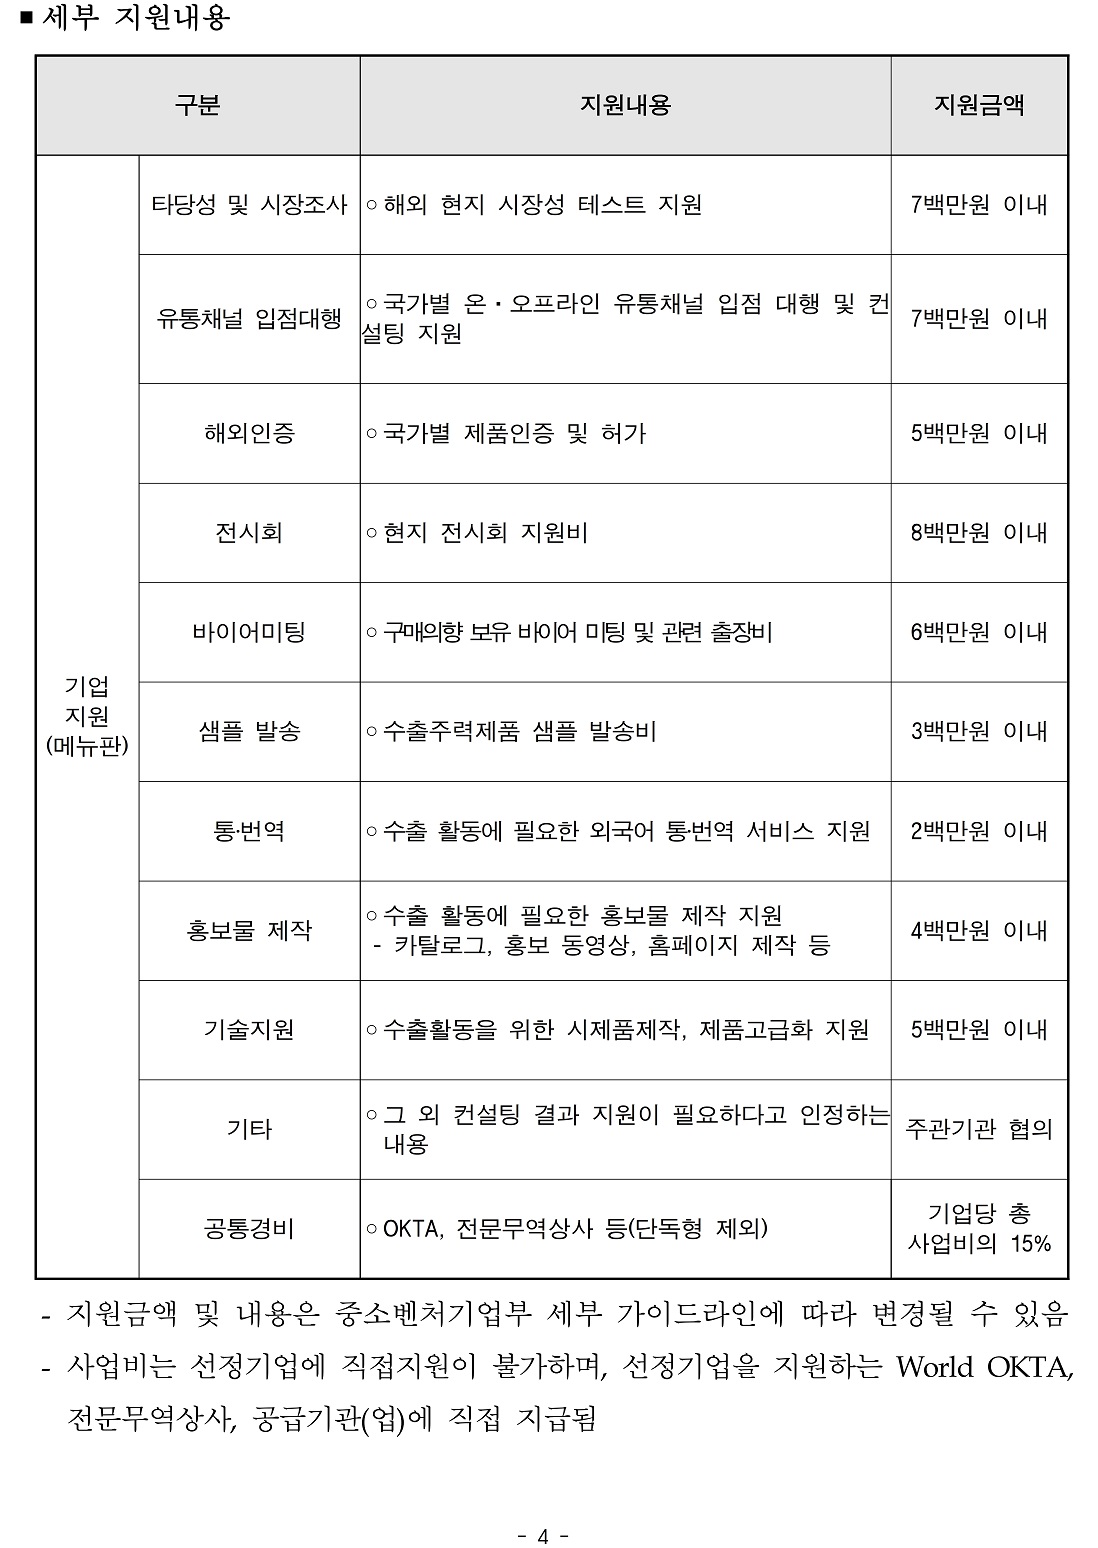 붙임1) 2021년 경북지역 지역특화산업 수출새싹기업지원사업 수혜기업 모집 공고문.pdf_page_4.jpg 이미지입니다.